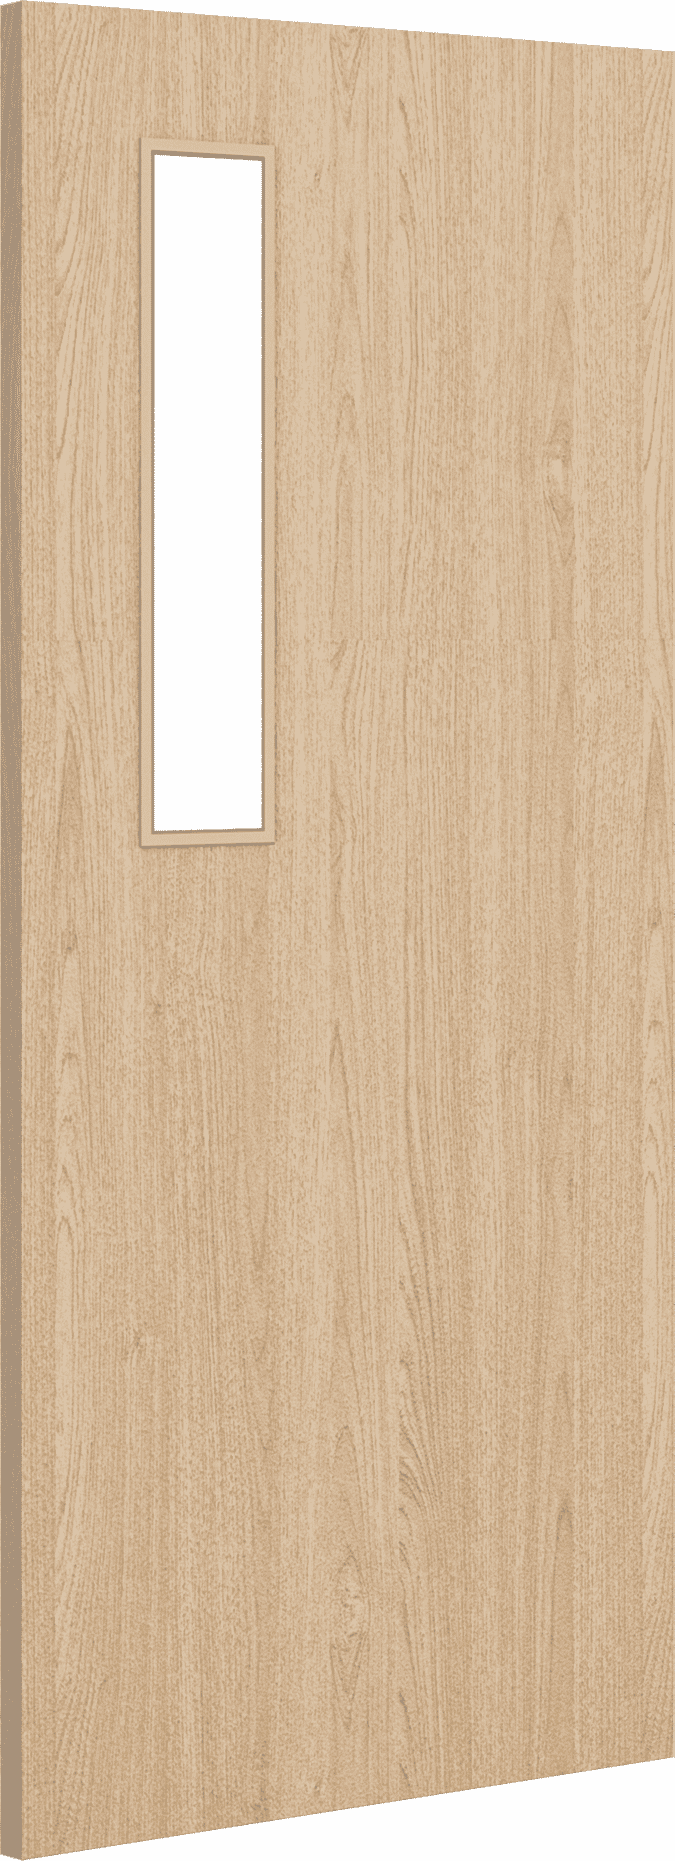 2040mm x 826mm x 54mm Architectural Oak 08 Clear Glazed - Prefinished FD60 Fire Door Blank